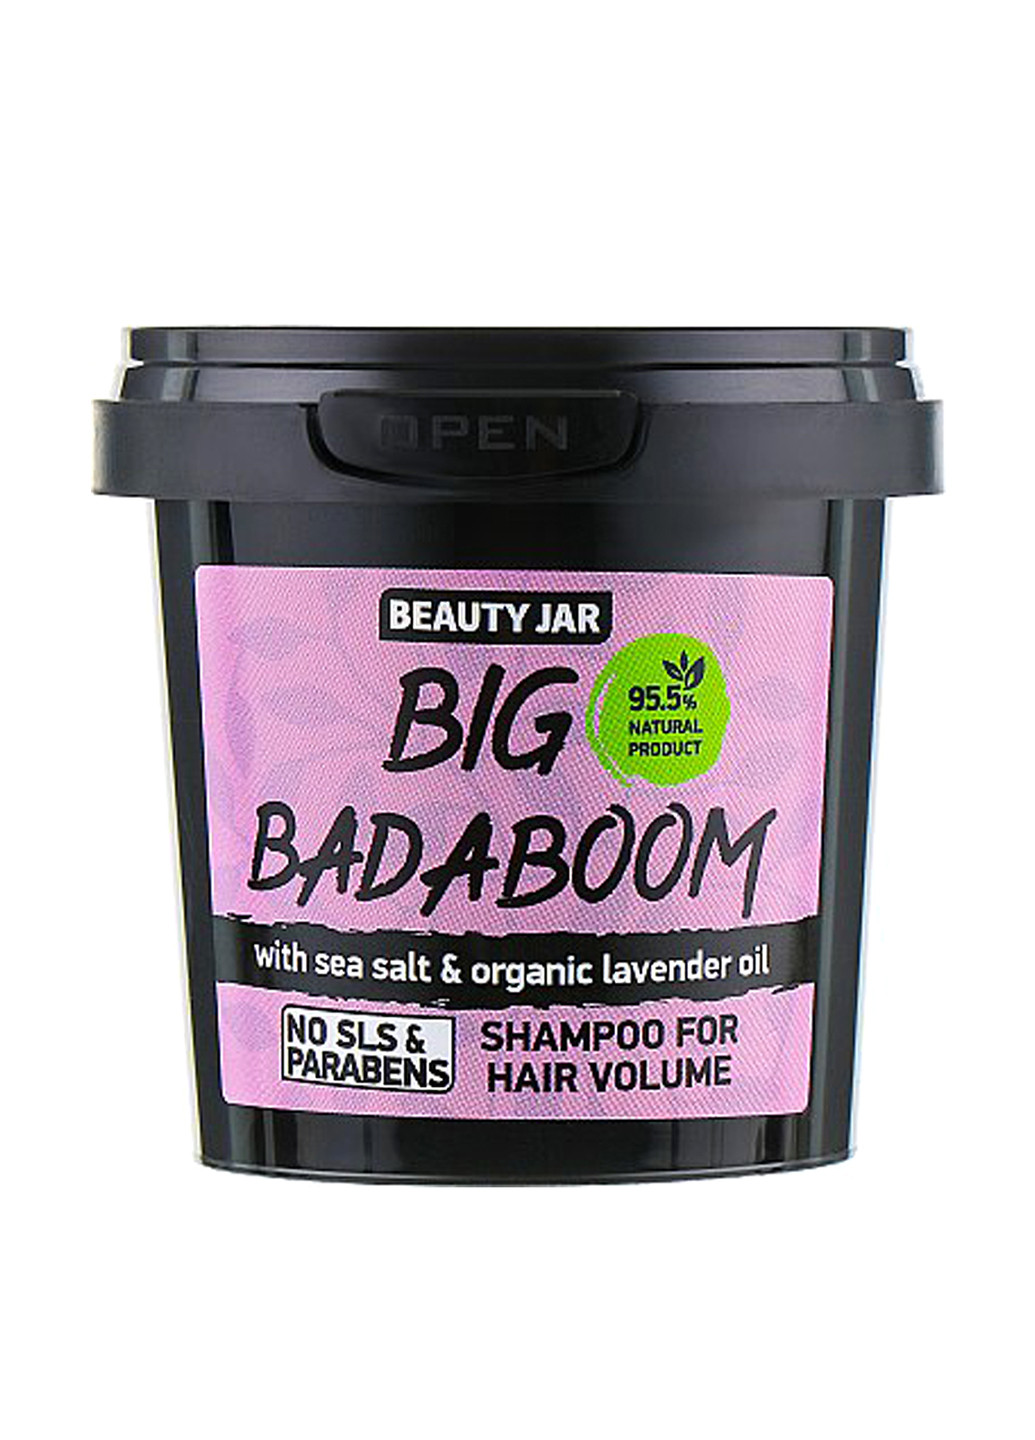 Шампунь для объема волос Big Badaboom, 100 г Beauty Jar (160737424)